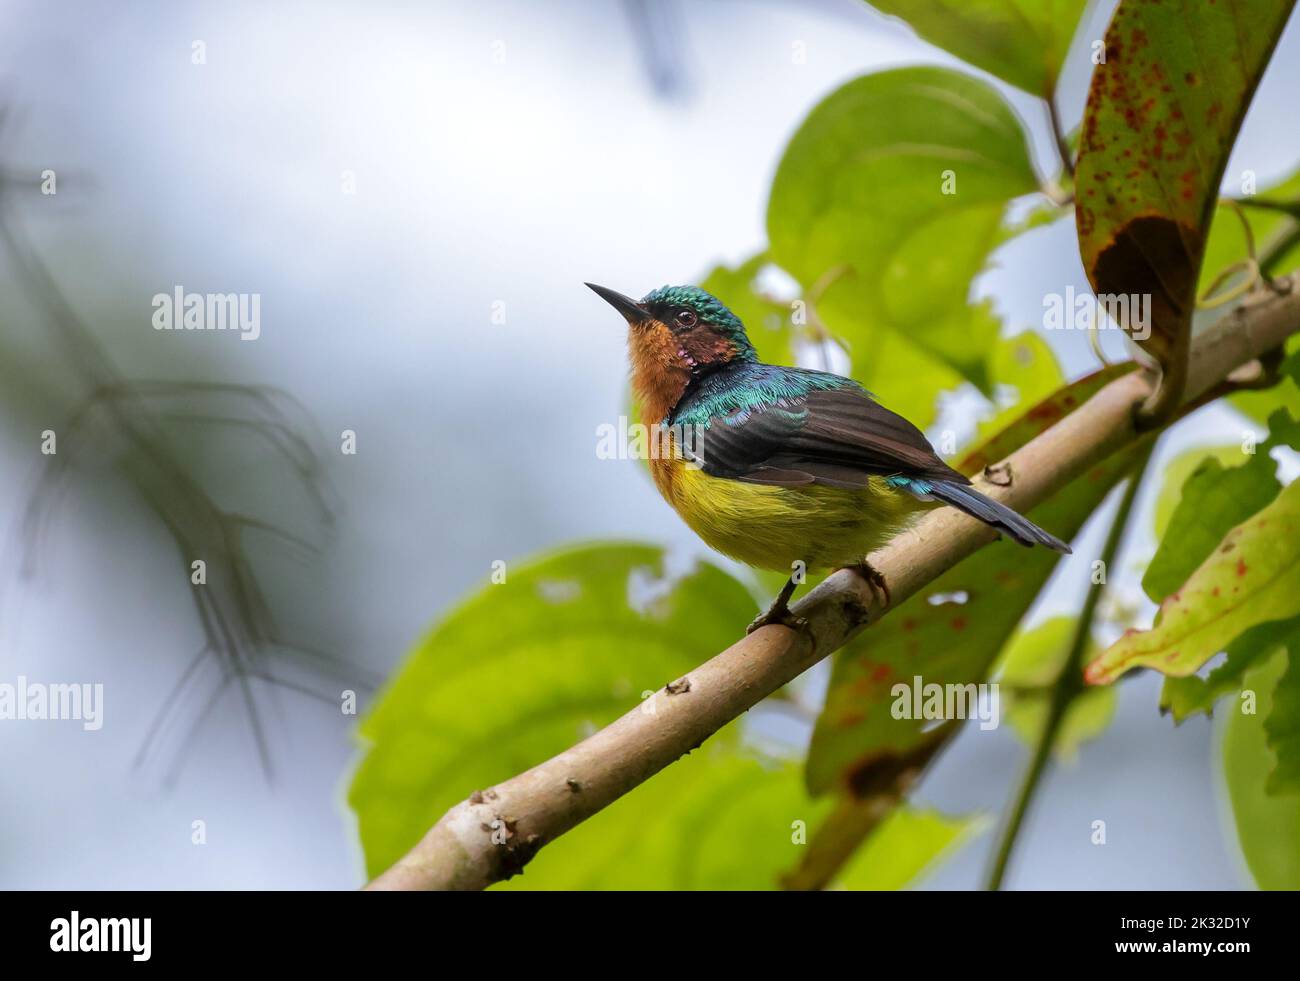 Rubinwanzen-Sonnenvögel (Männchen). rubinwanzen-Sonnenvögel ist eine Art von Sonnenvögeln in der Familie Nectariniidae. Stockfoto